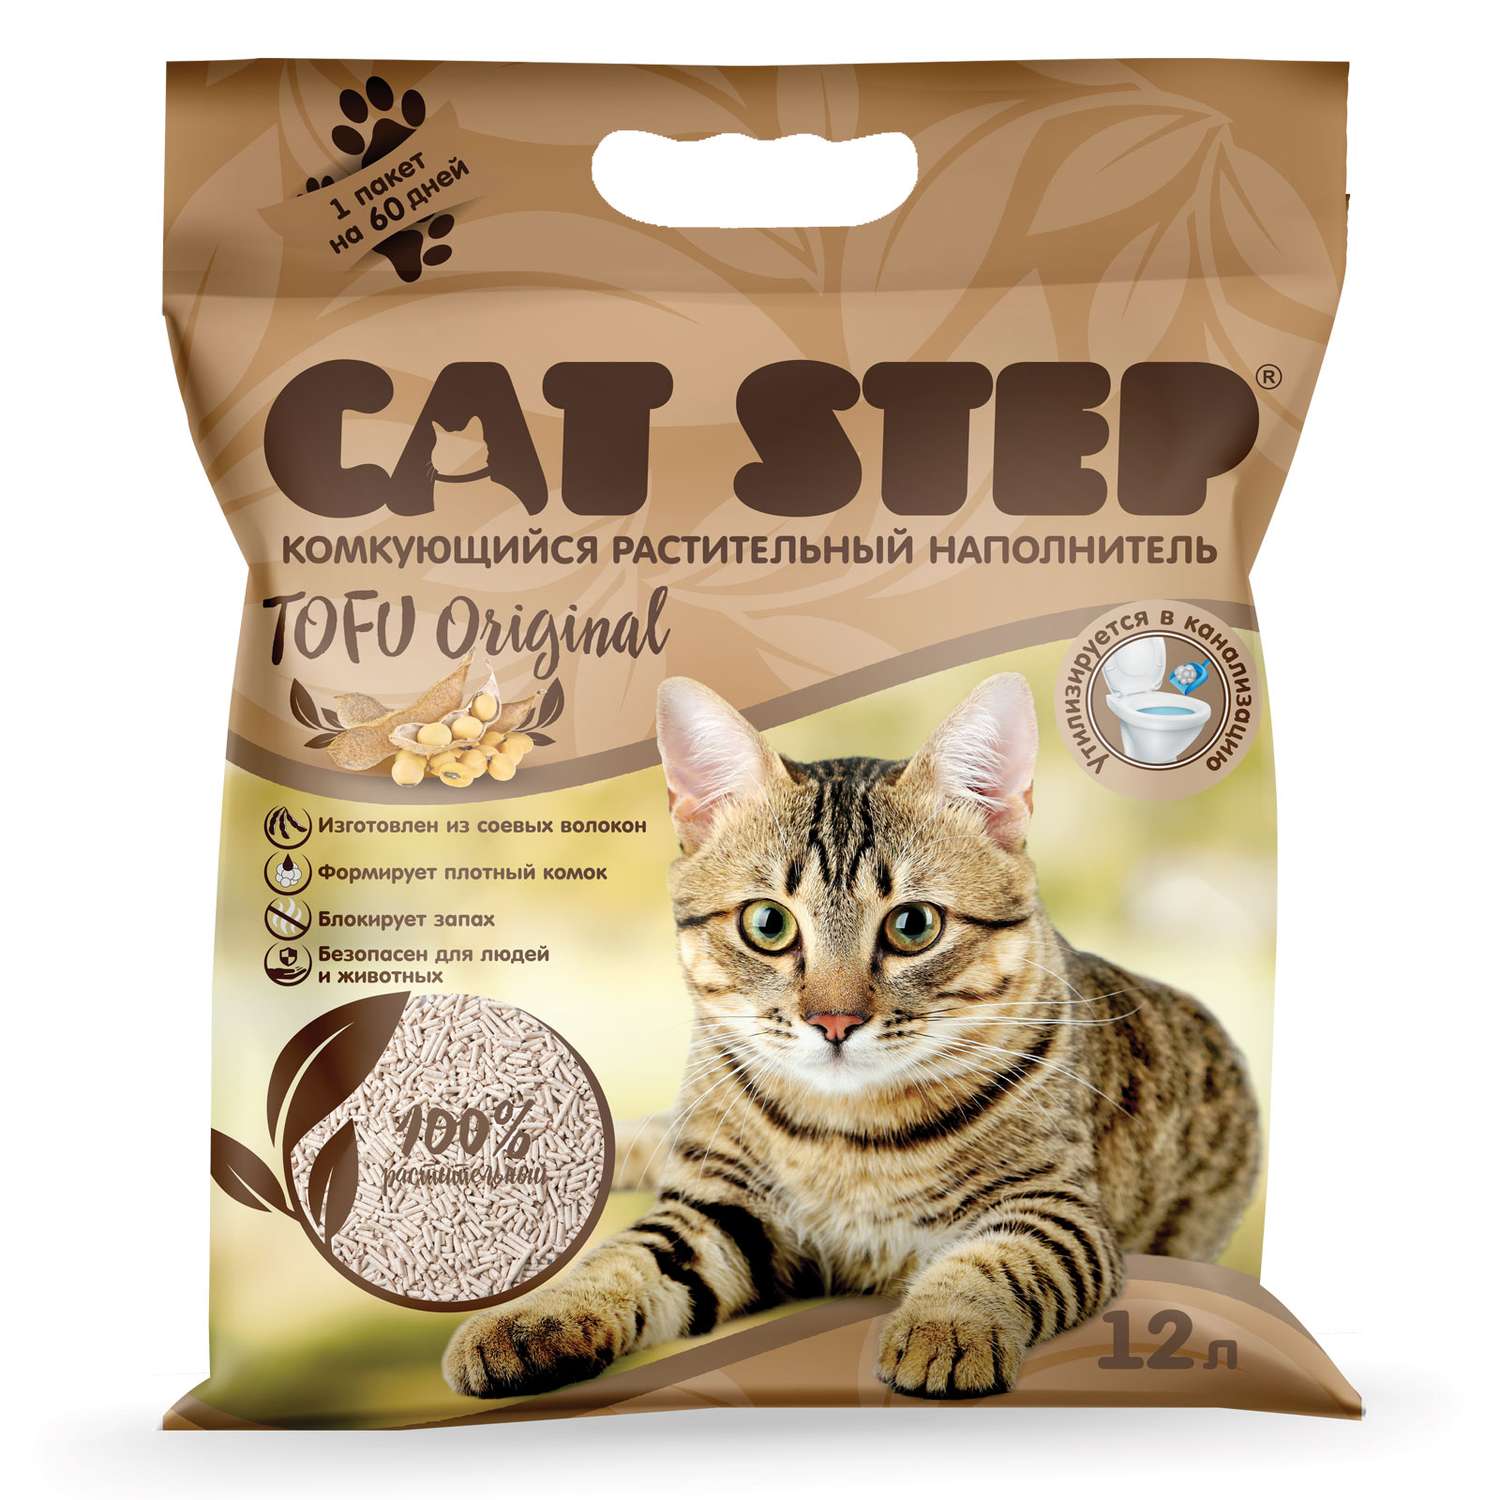 Наполнитель для кошачьего туалета Cat Step Tofu Original комкующийся растительный 12л - фото 1